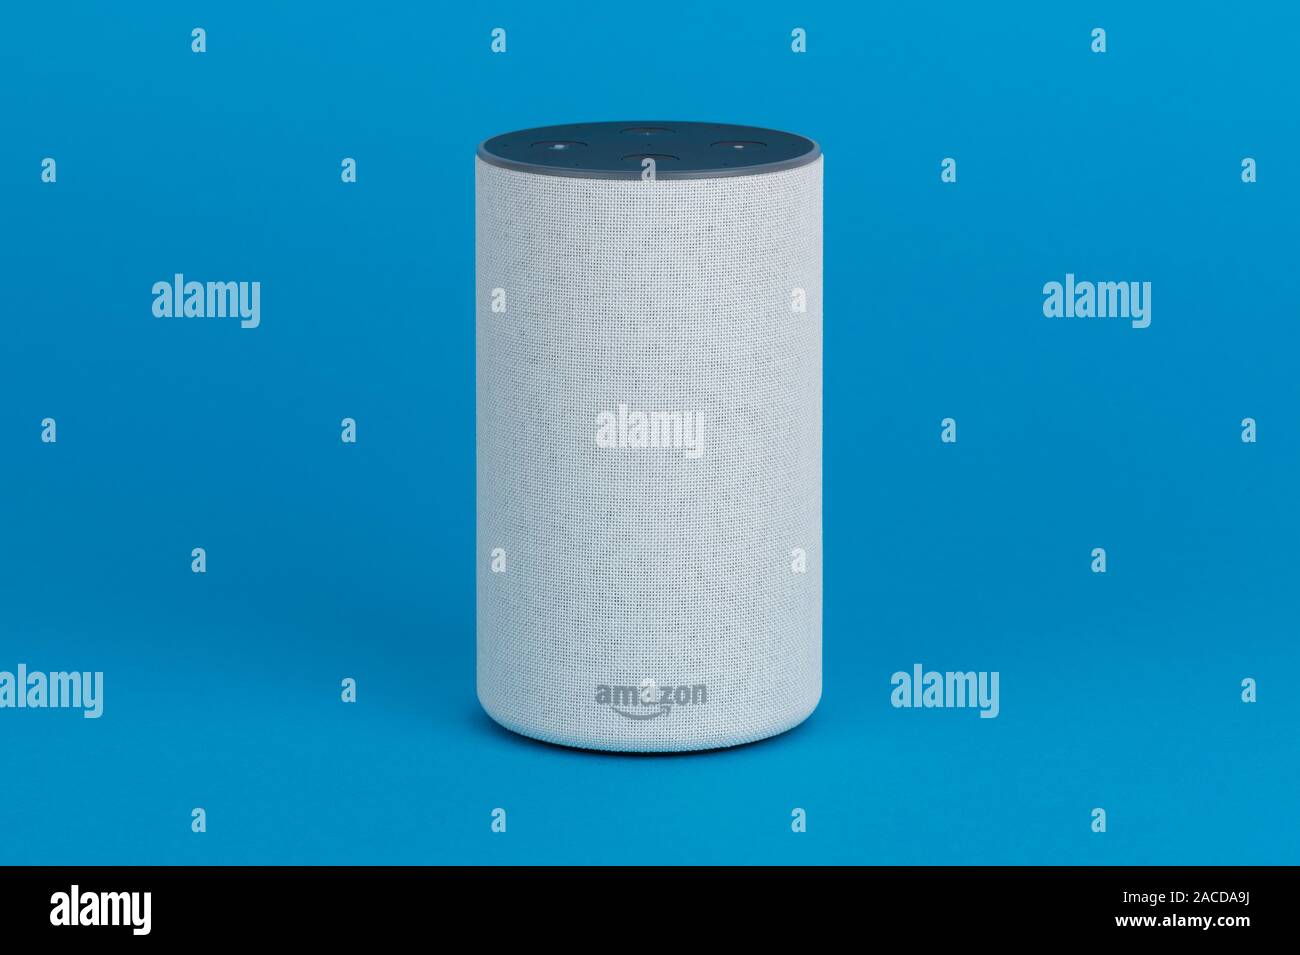 Il 2017 Rilascio di un Amazon eco (di seconda generazione) smart speaker e assistente personale Alexa sparato contro uno sfondo blu. Foto Stock